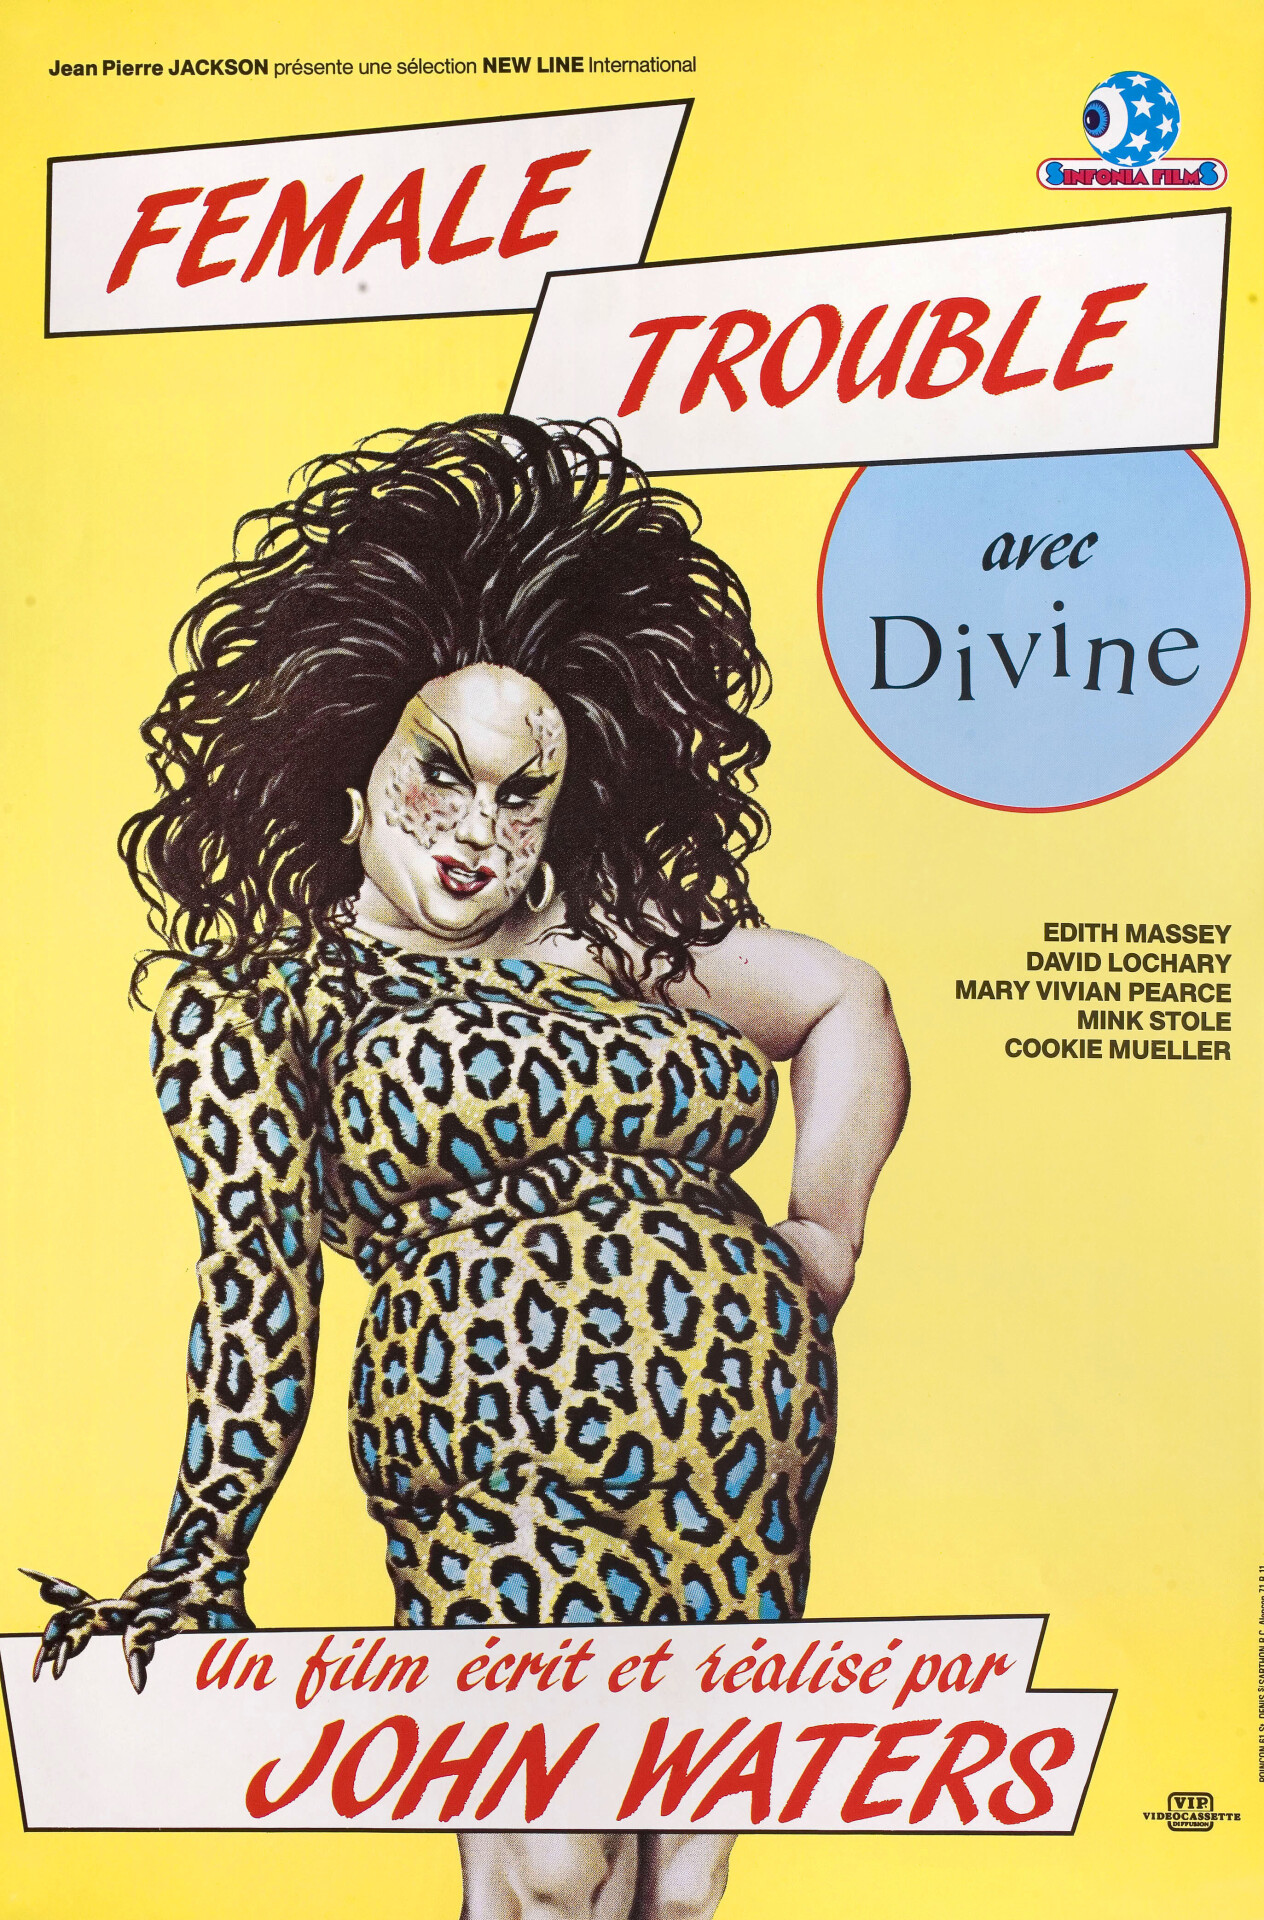 Женские проблемы (Female Trouble, 1974), режиссёр Джон Уотерс, французский постер к фильму (ужасы, 1984 год)